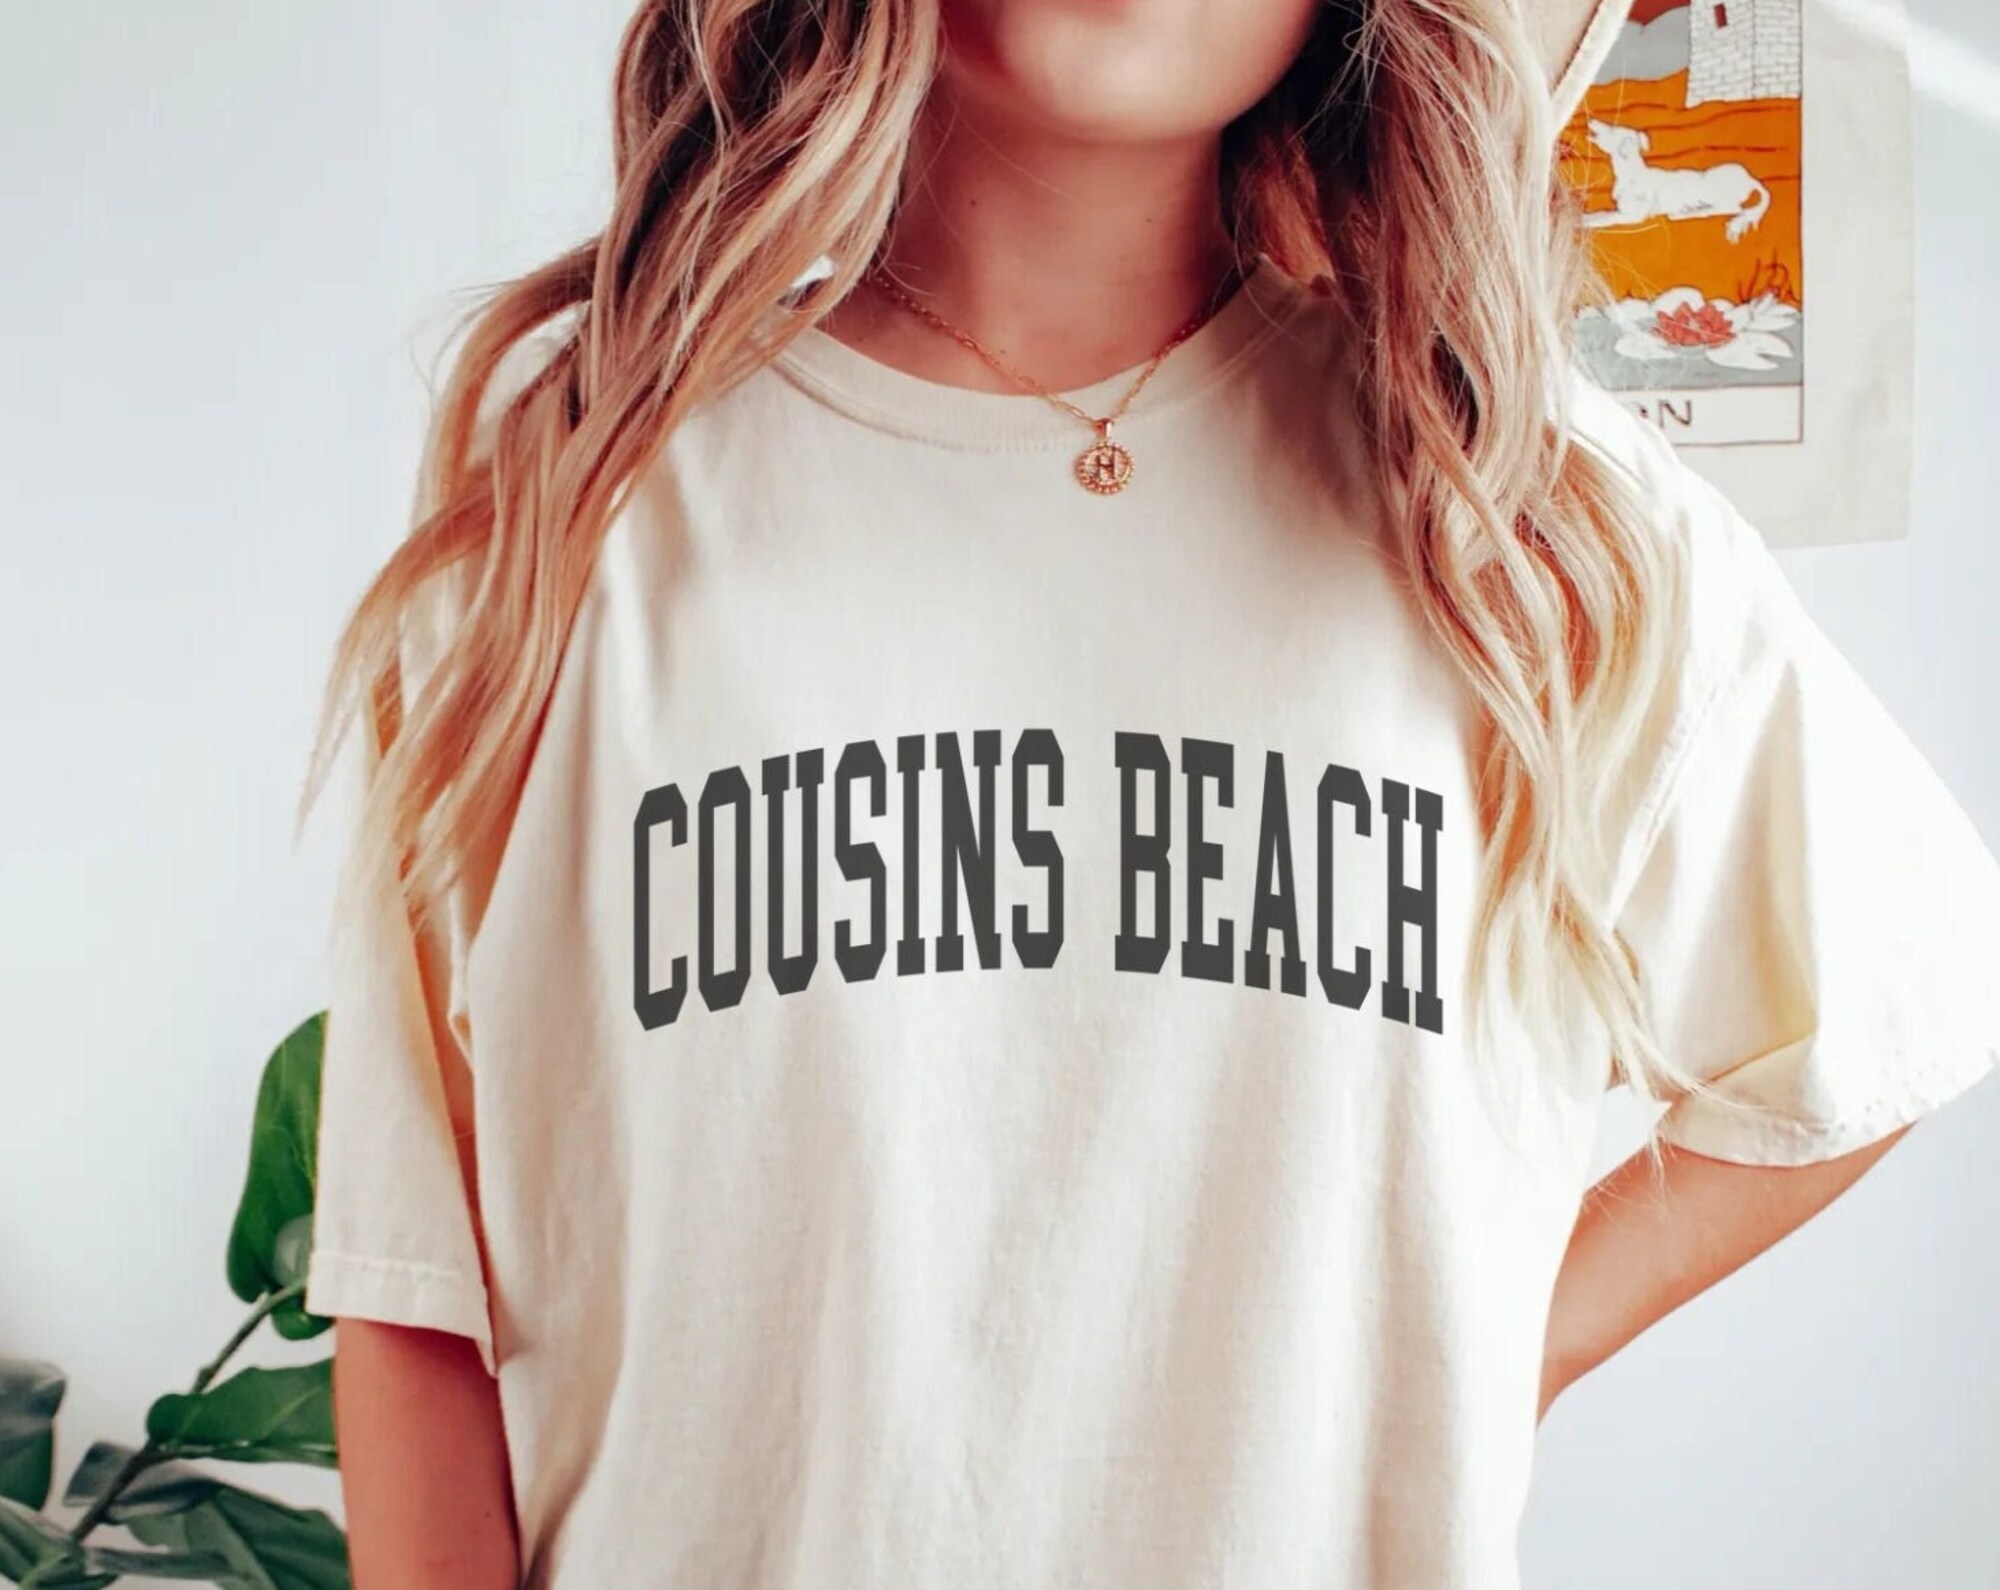 Discover Cousins Beach, Cousins Beach Shirt, Cousins Beach Tshirt